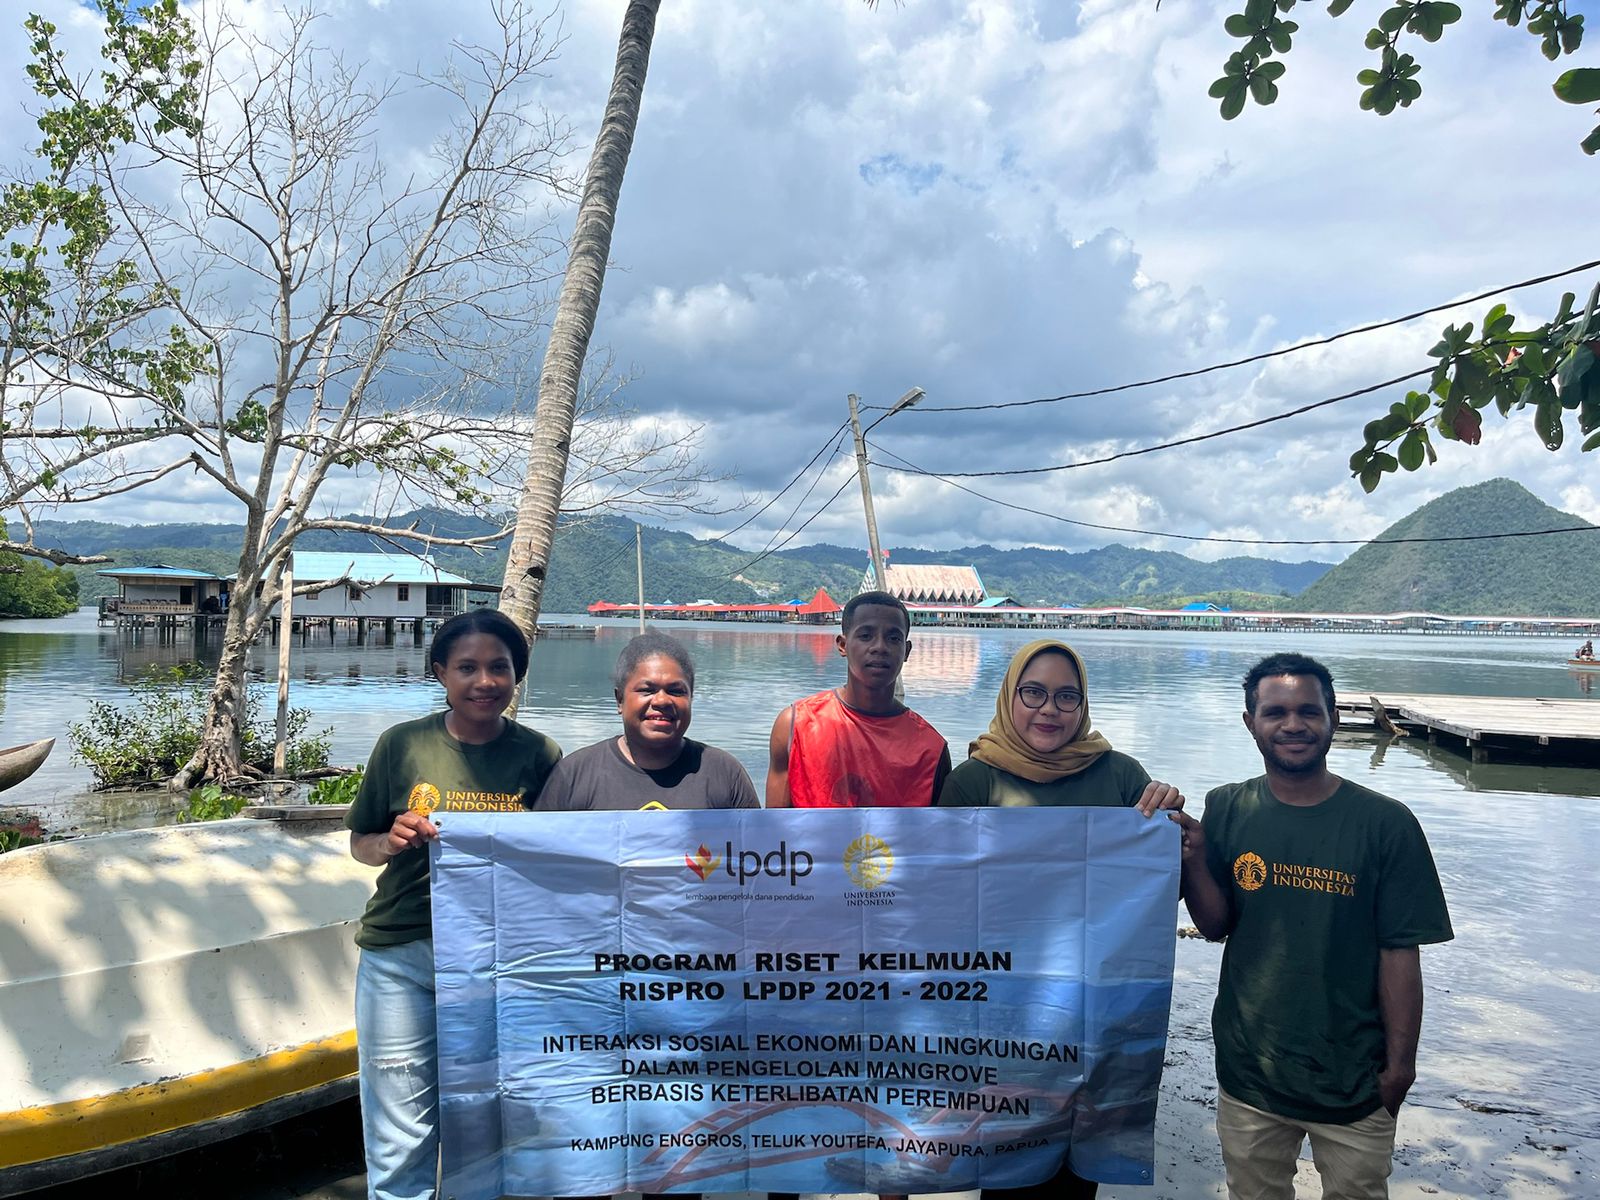 Riset Ilmu Lingkungan UI : Hutan  Perempuan Suku Enggros Papua dalam Kondisi Tercemar dan Kritis